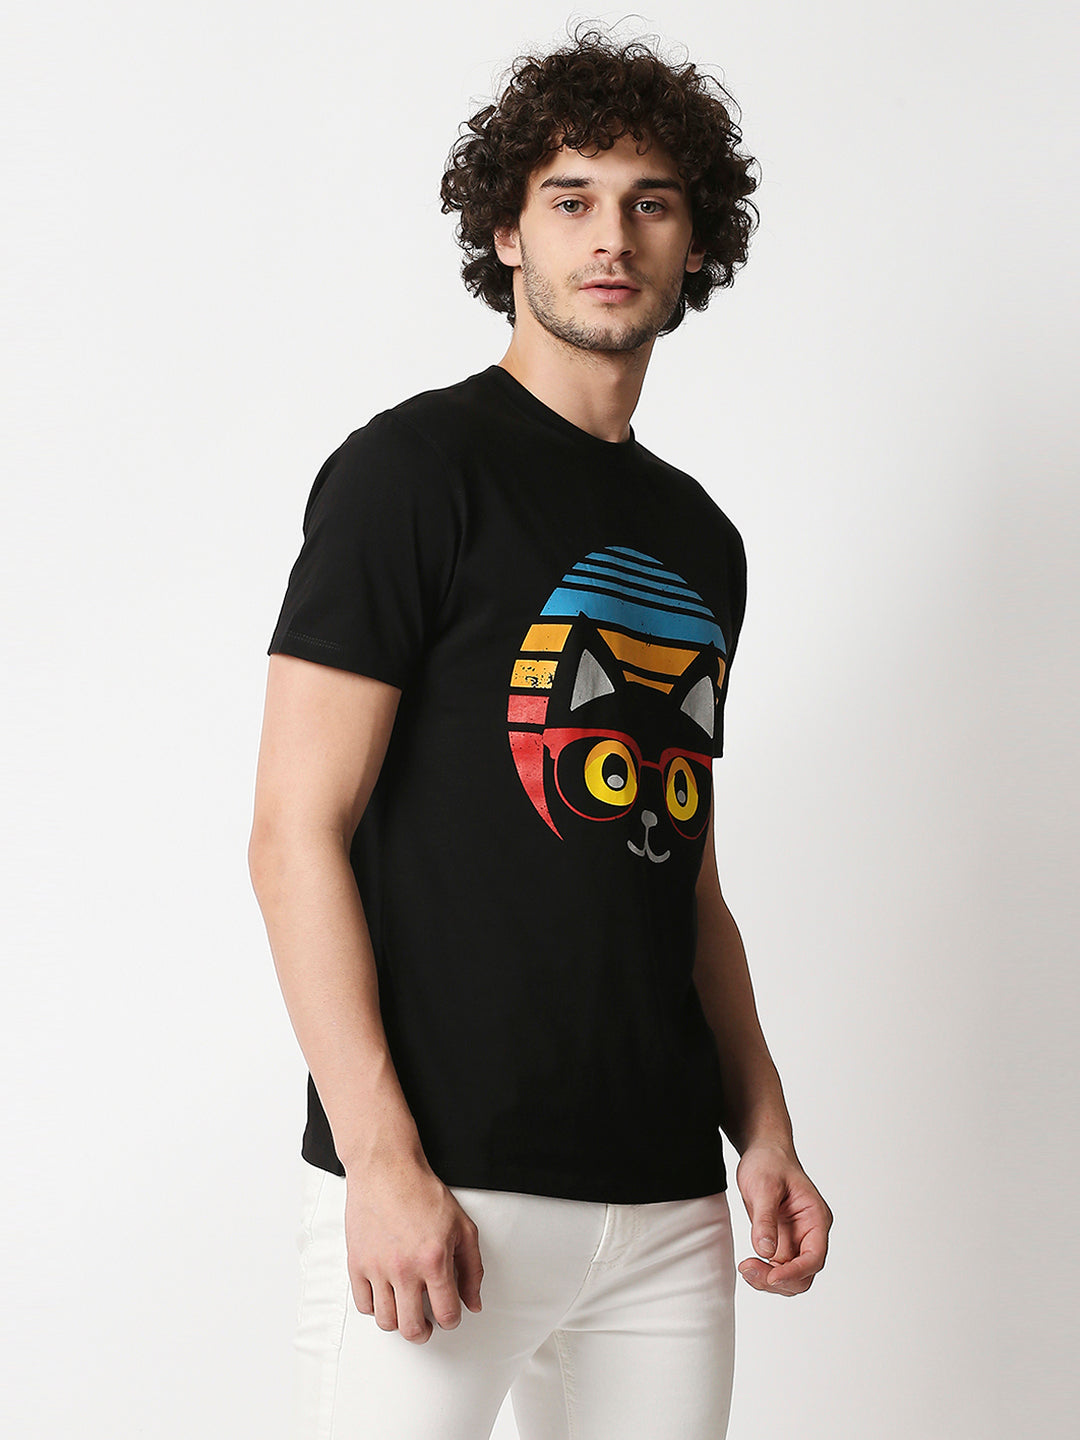 Buy Men's Black Regular fit Chest print T-shirt.